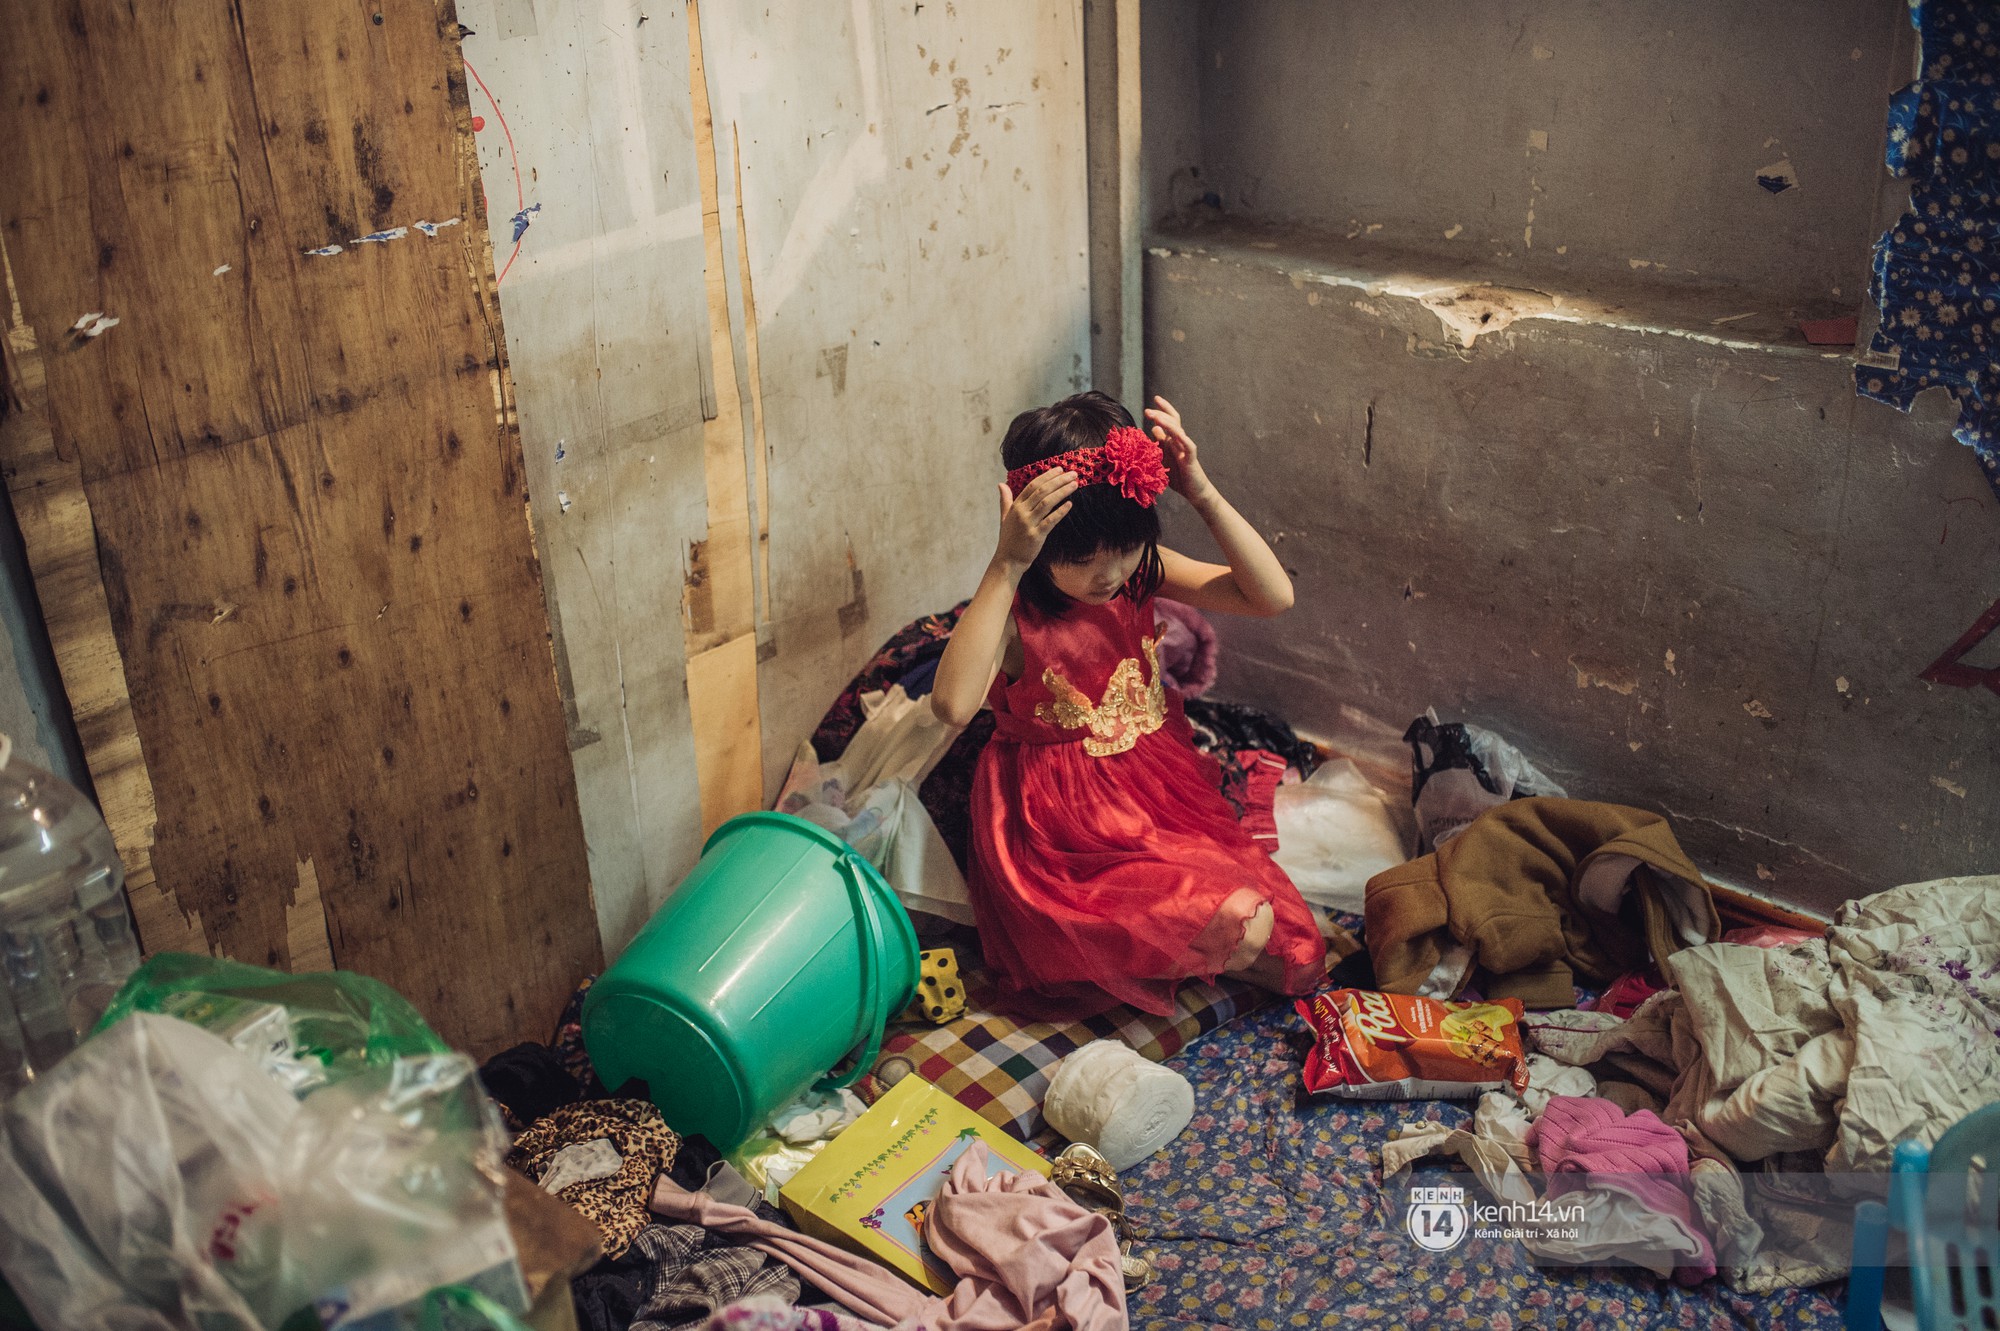 Chùm ảnh: Những khoảnh khắc đốn tim của em bé nghèo có gu ăn mặc như fashionista ở Hà Nội - Ảnh 4.